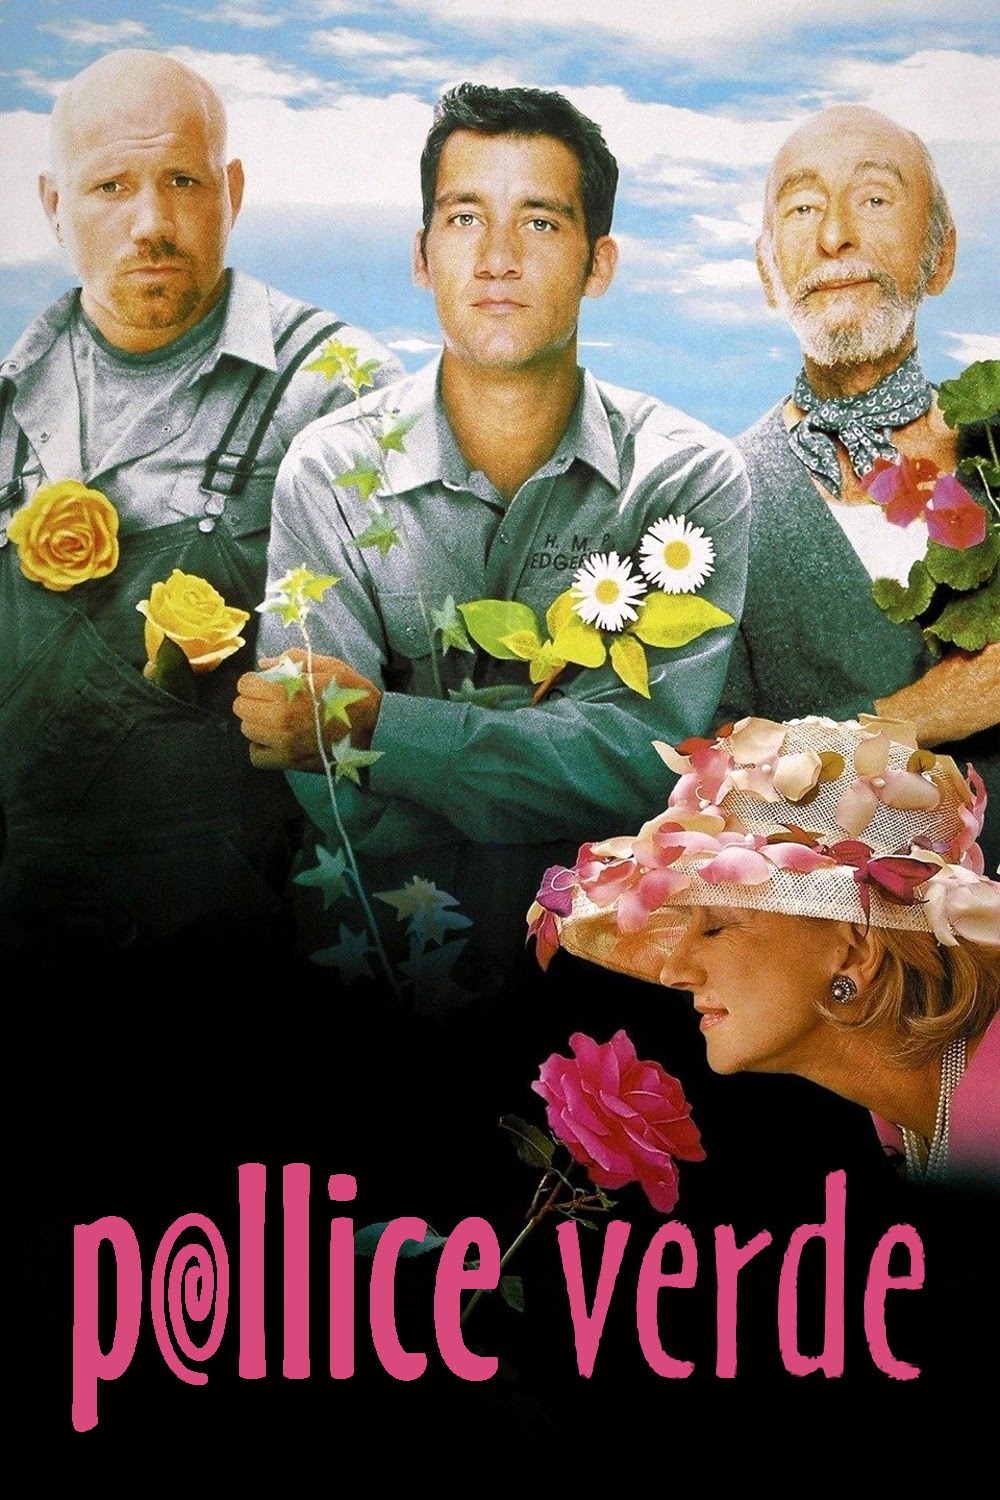 Pollice verde (2000)